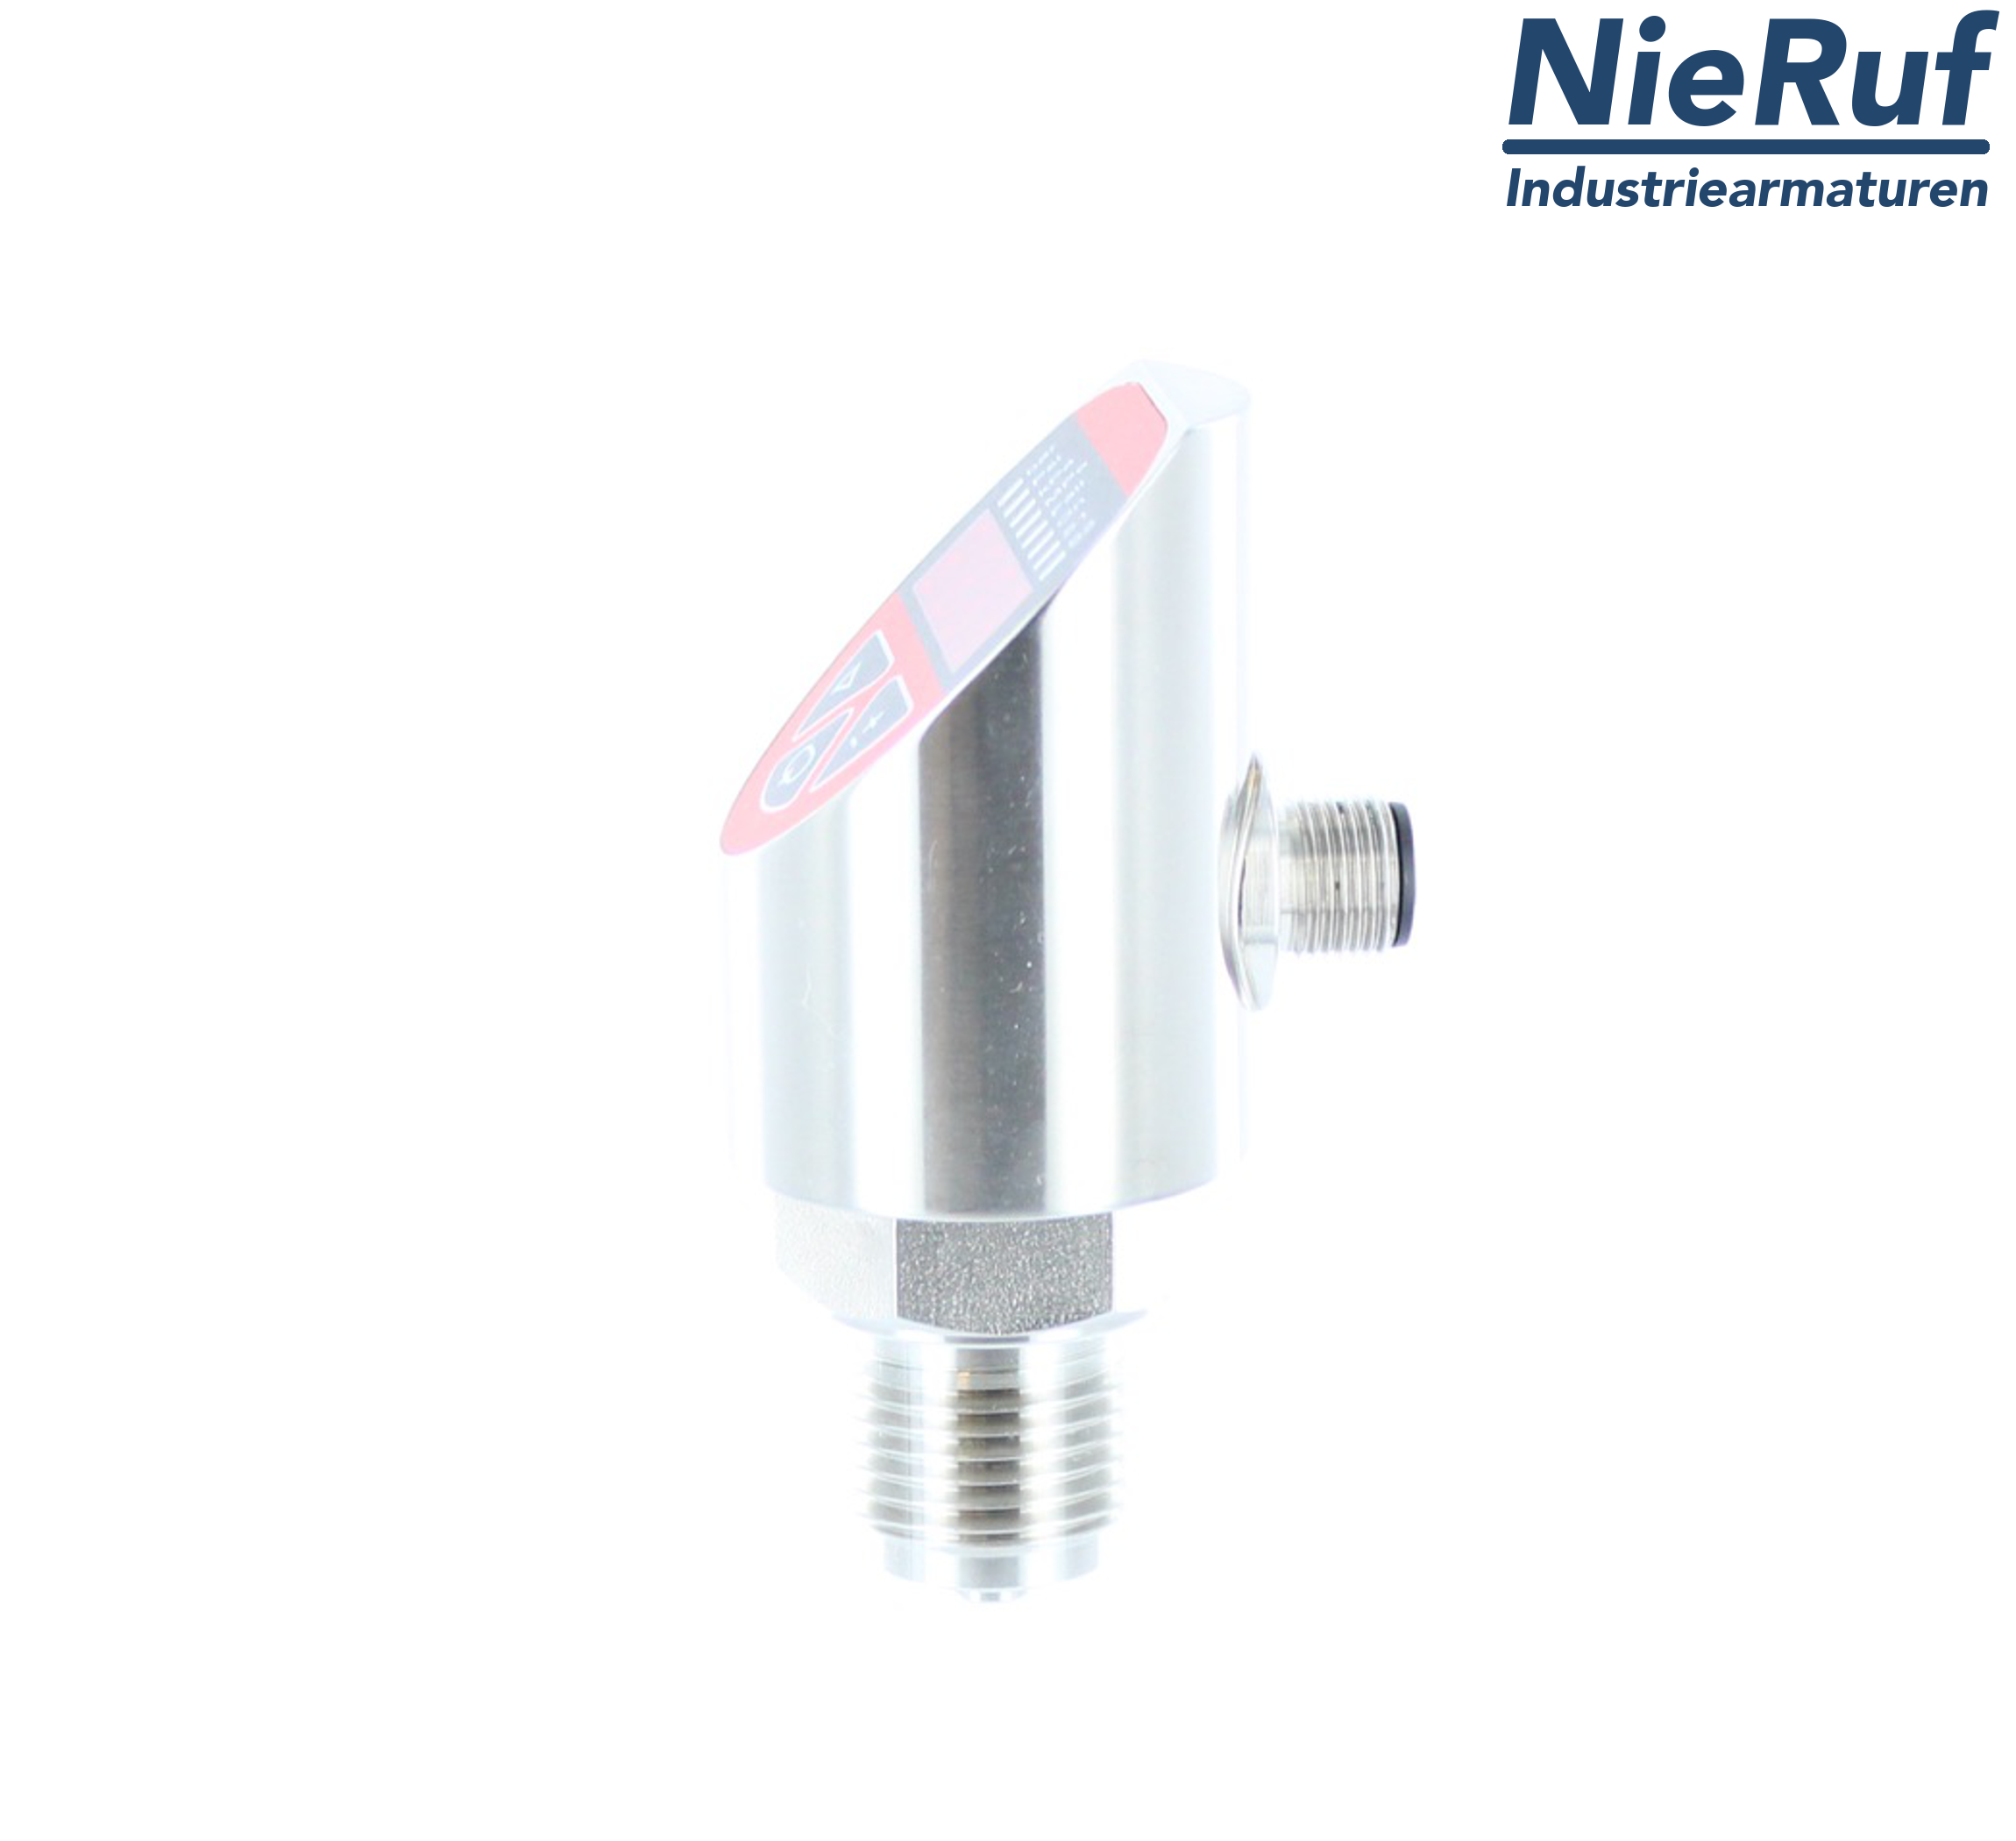 sensore di pressione digitale G 1/2" B IB  5-fili: 2xPNP, 1x4 - 20mA FPM 0,0 - 16,0 bar